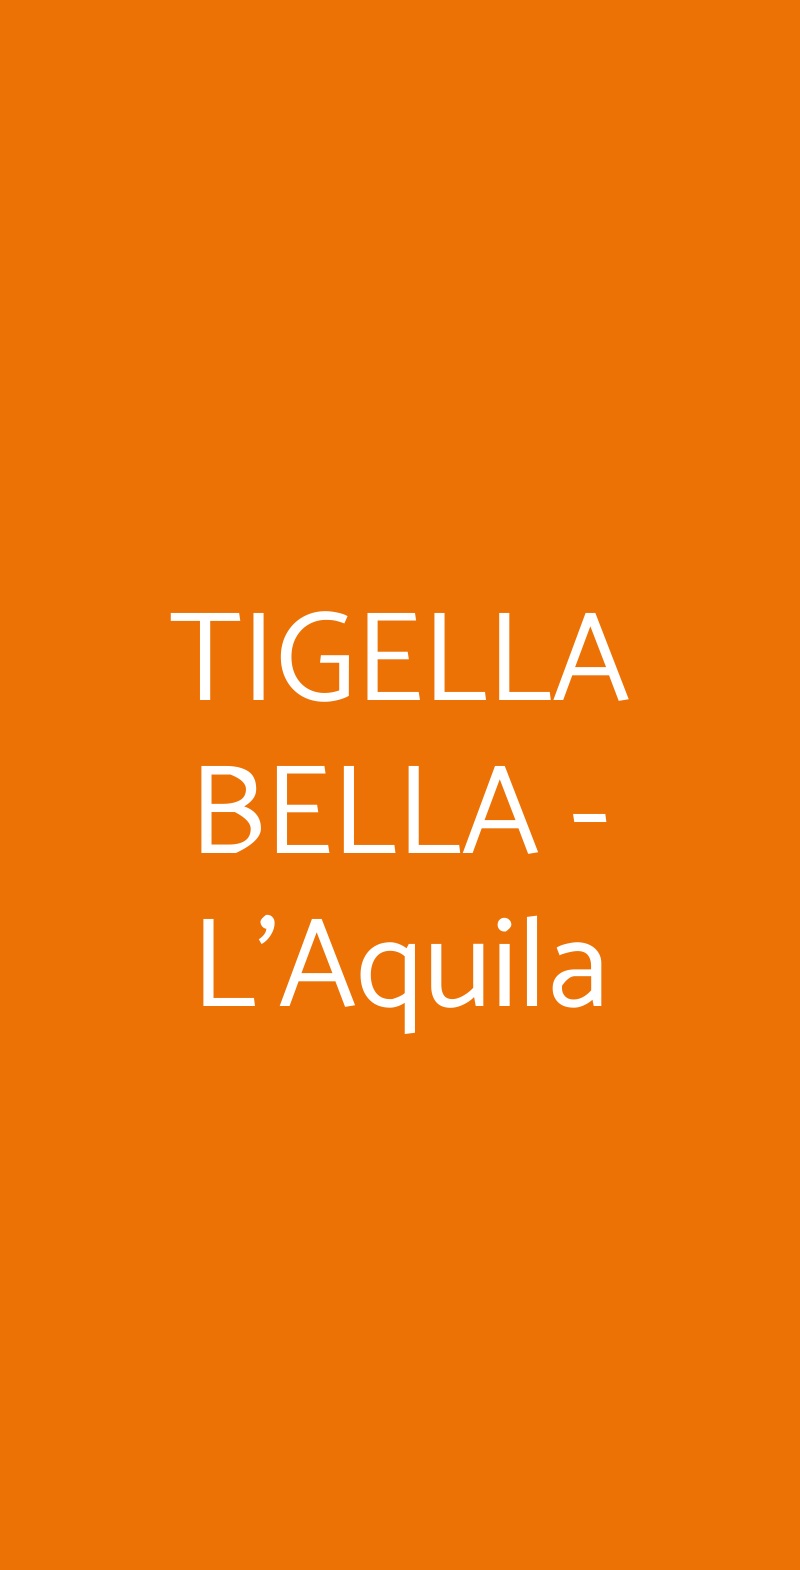 TIGELLA BELLA - L'Aquila L'Aquila menù 1 pagina